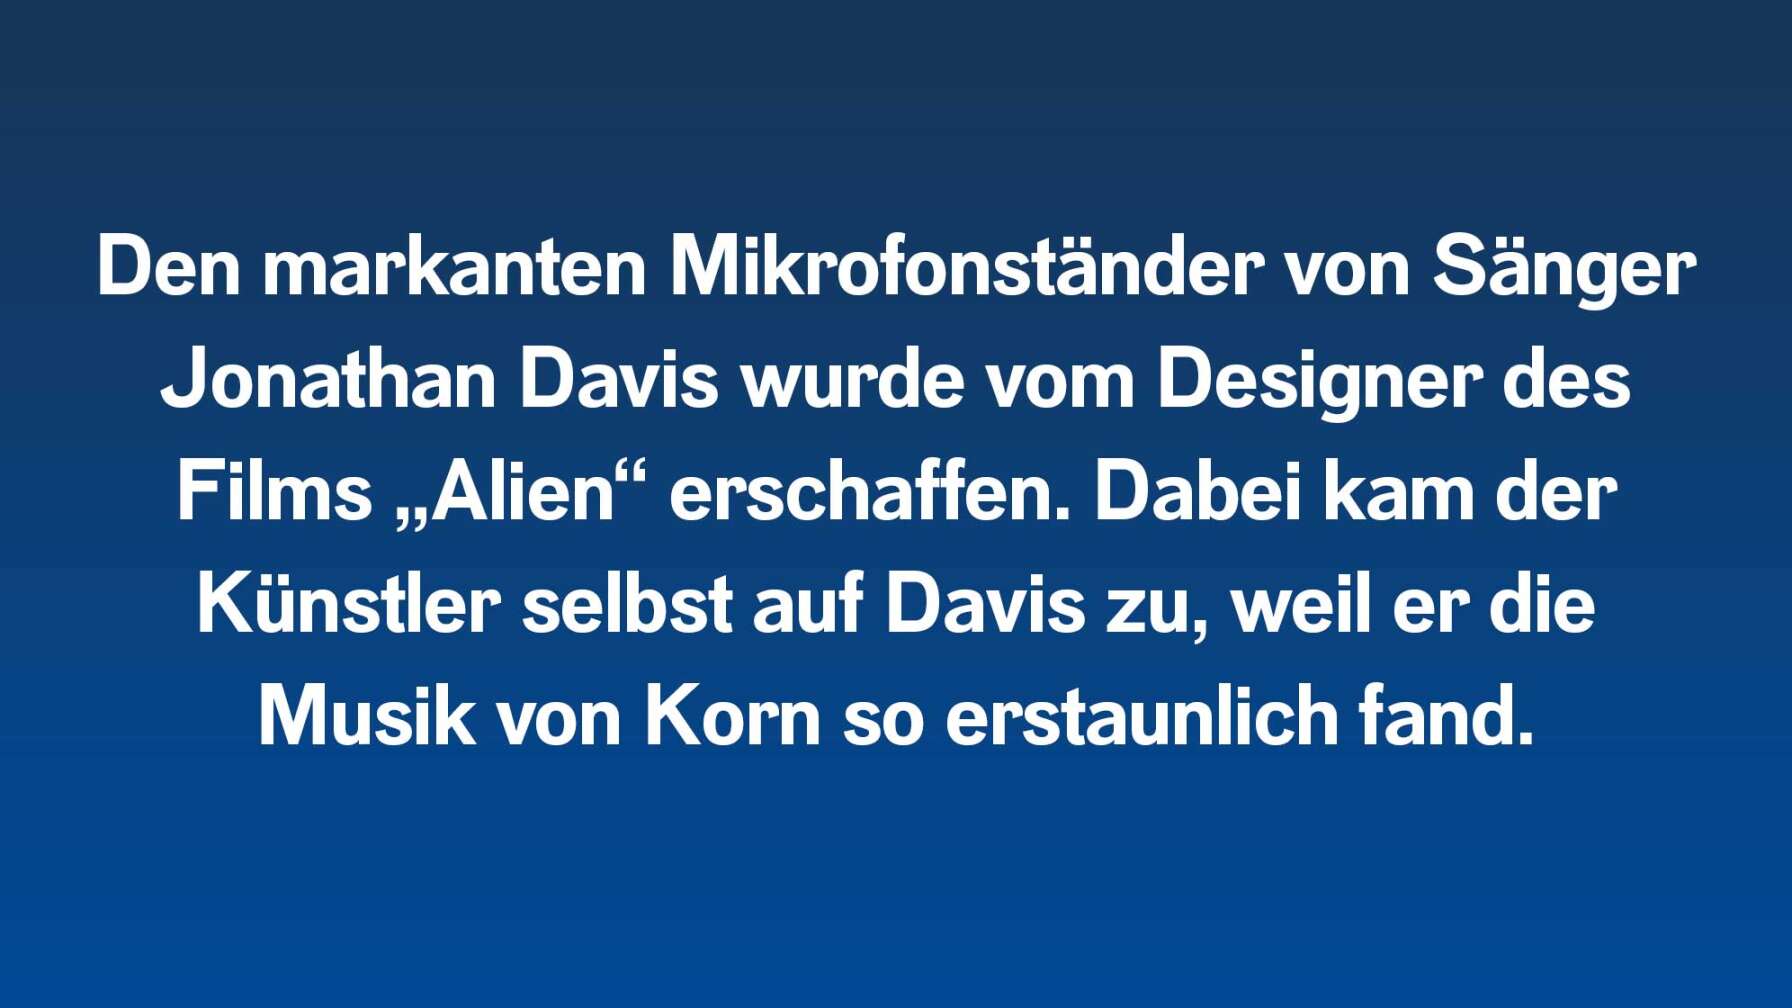 Den markanten Mikrofonständer von Sänger Jonathan Davis wurde vom Designer des Films „Alien“ erschaffen. Dabei kam der Künstler selbst auf Davis zu, weil er die Musik von Korn so erstaunlich fand.